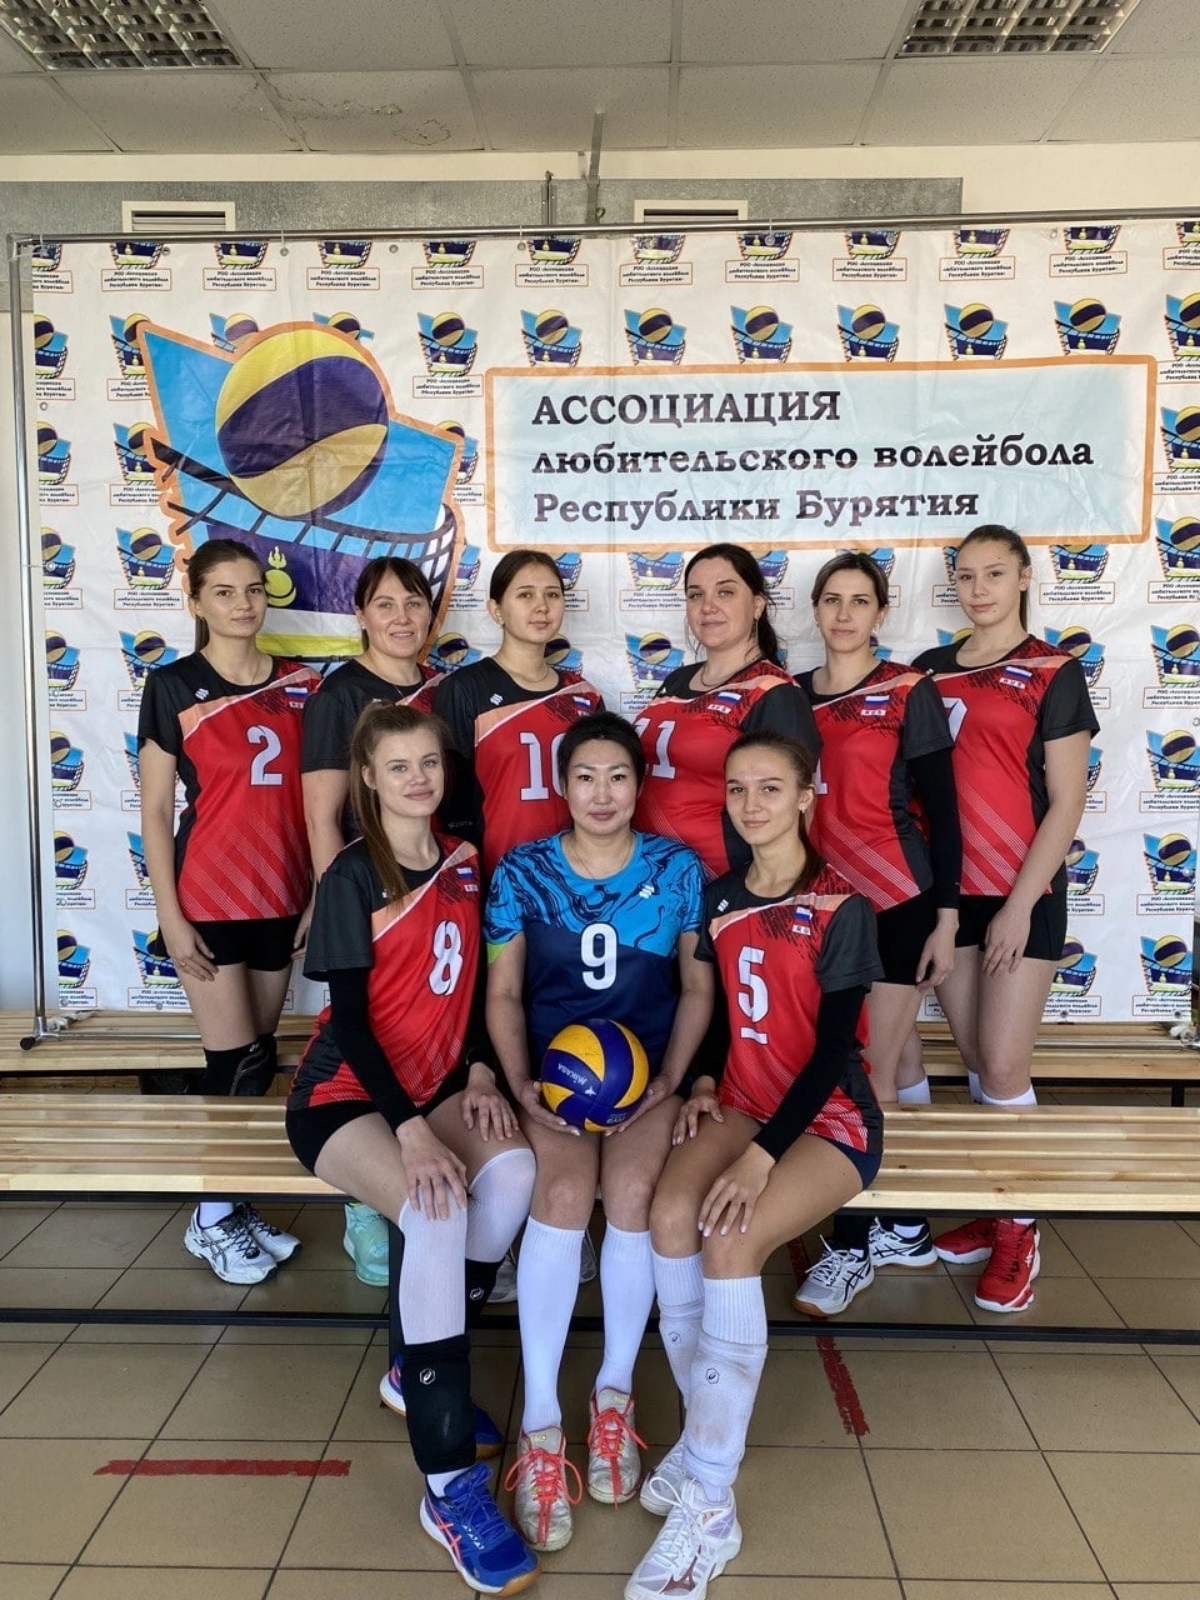 Успешный старт Чемпионата женской Любительской  Лиги  Республики Бурятия по волейболу.